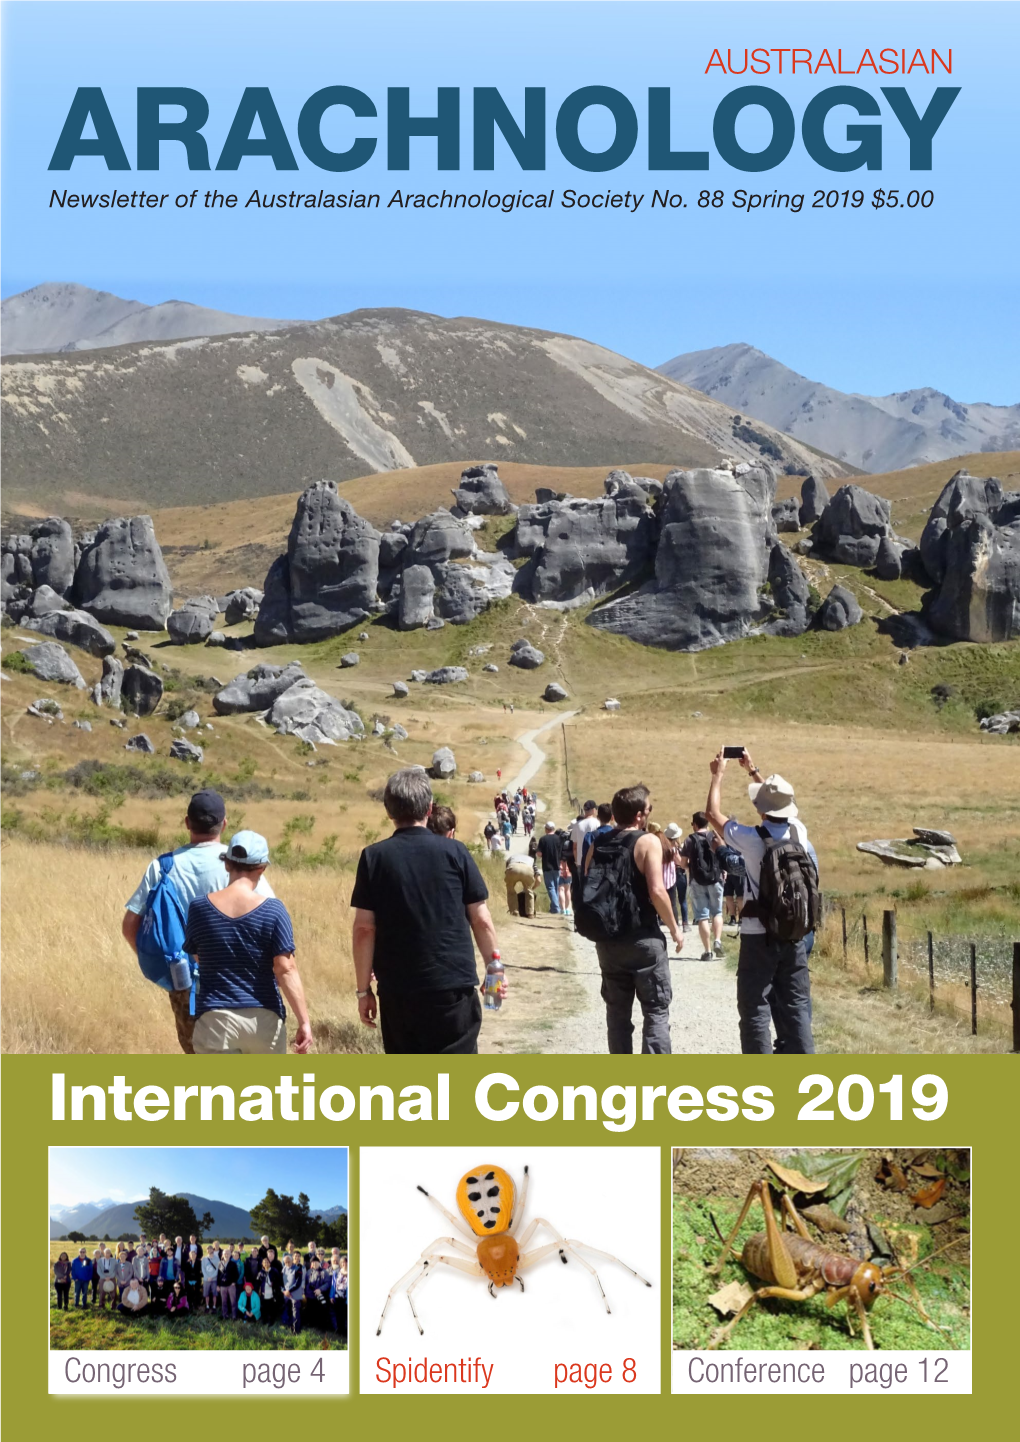 International Congress 2019